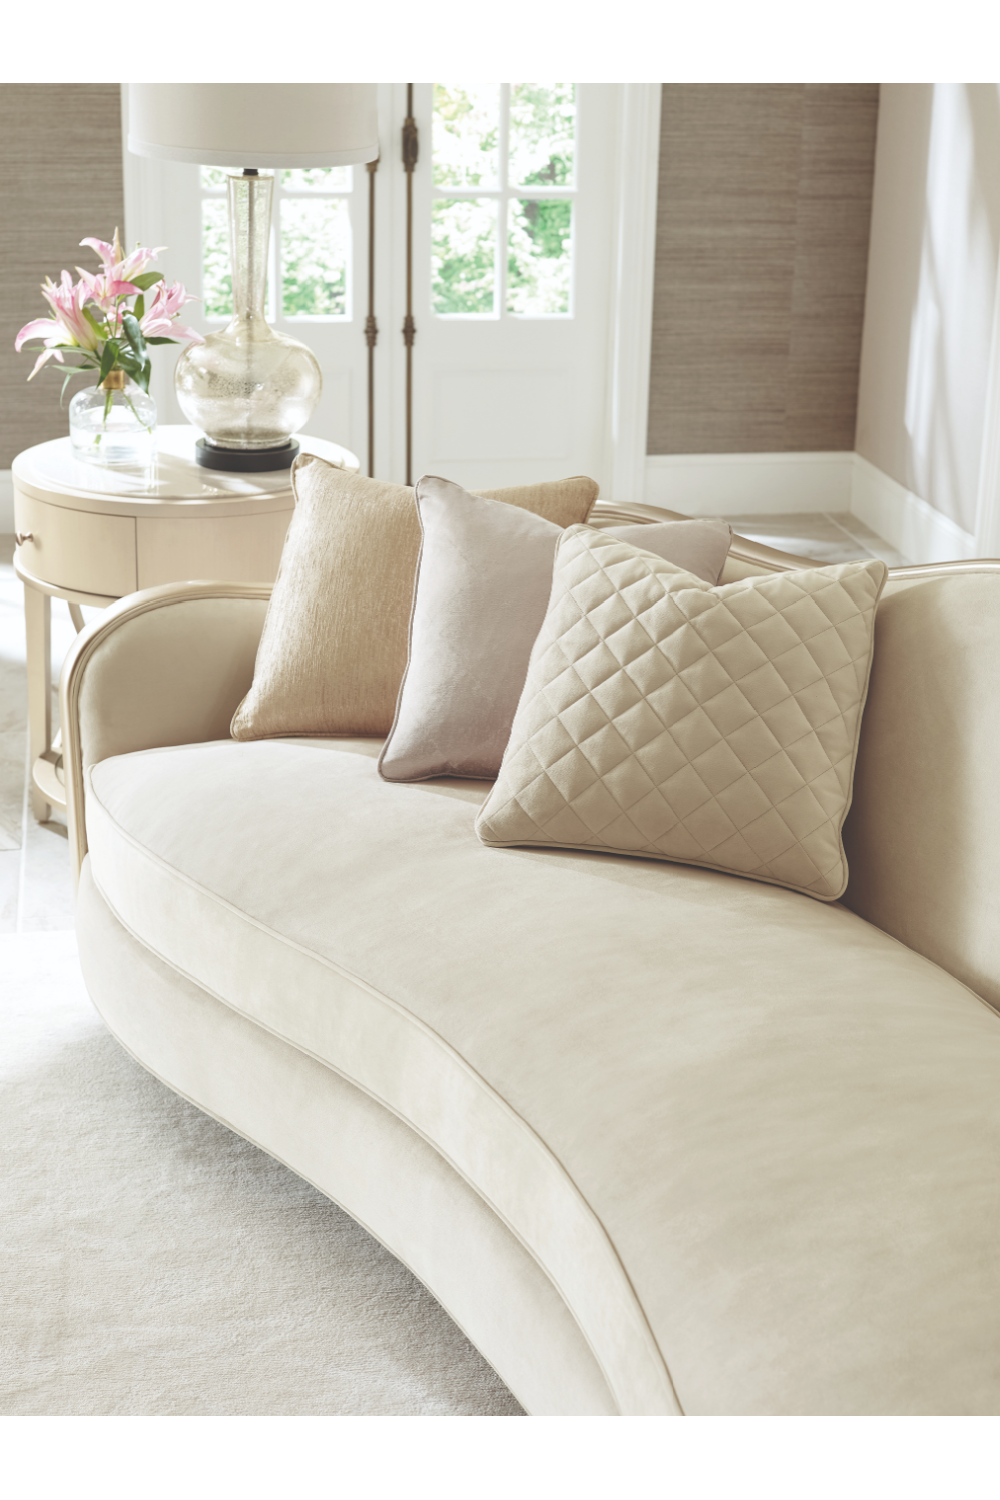 Beige Modern Classic Sofa | Caracole Adela | Oroa.com